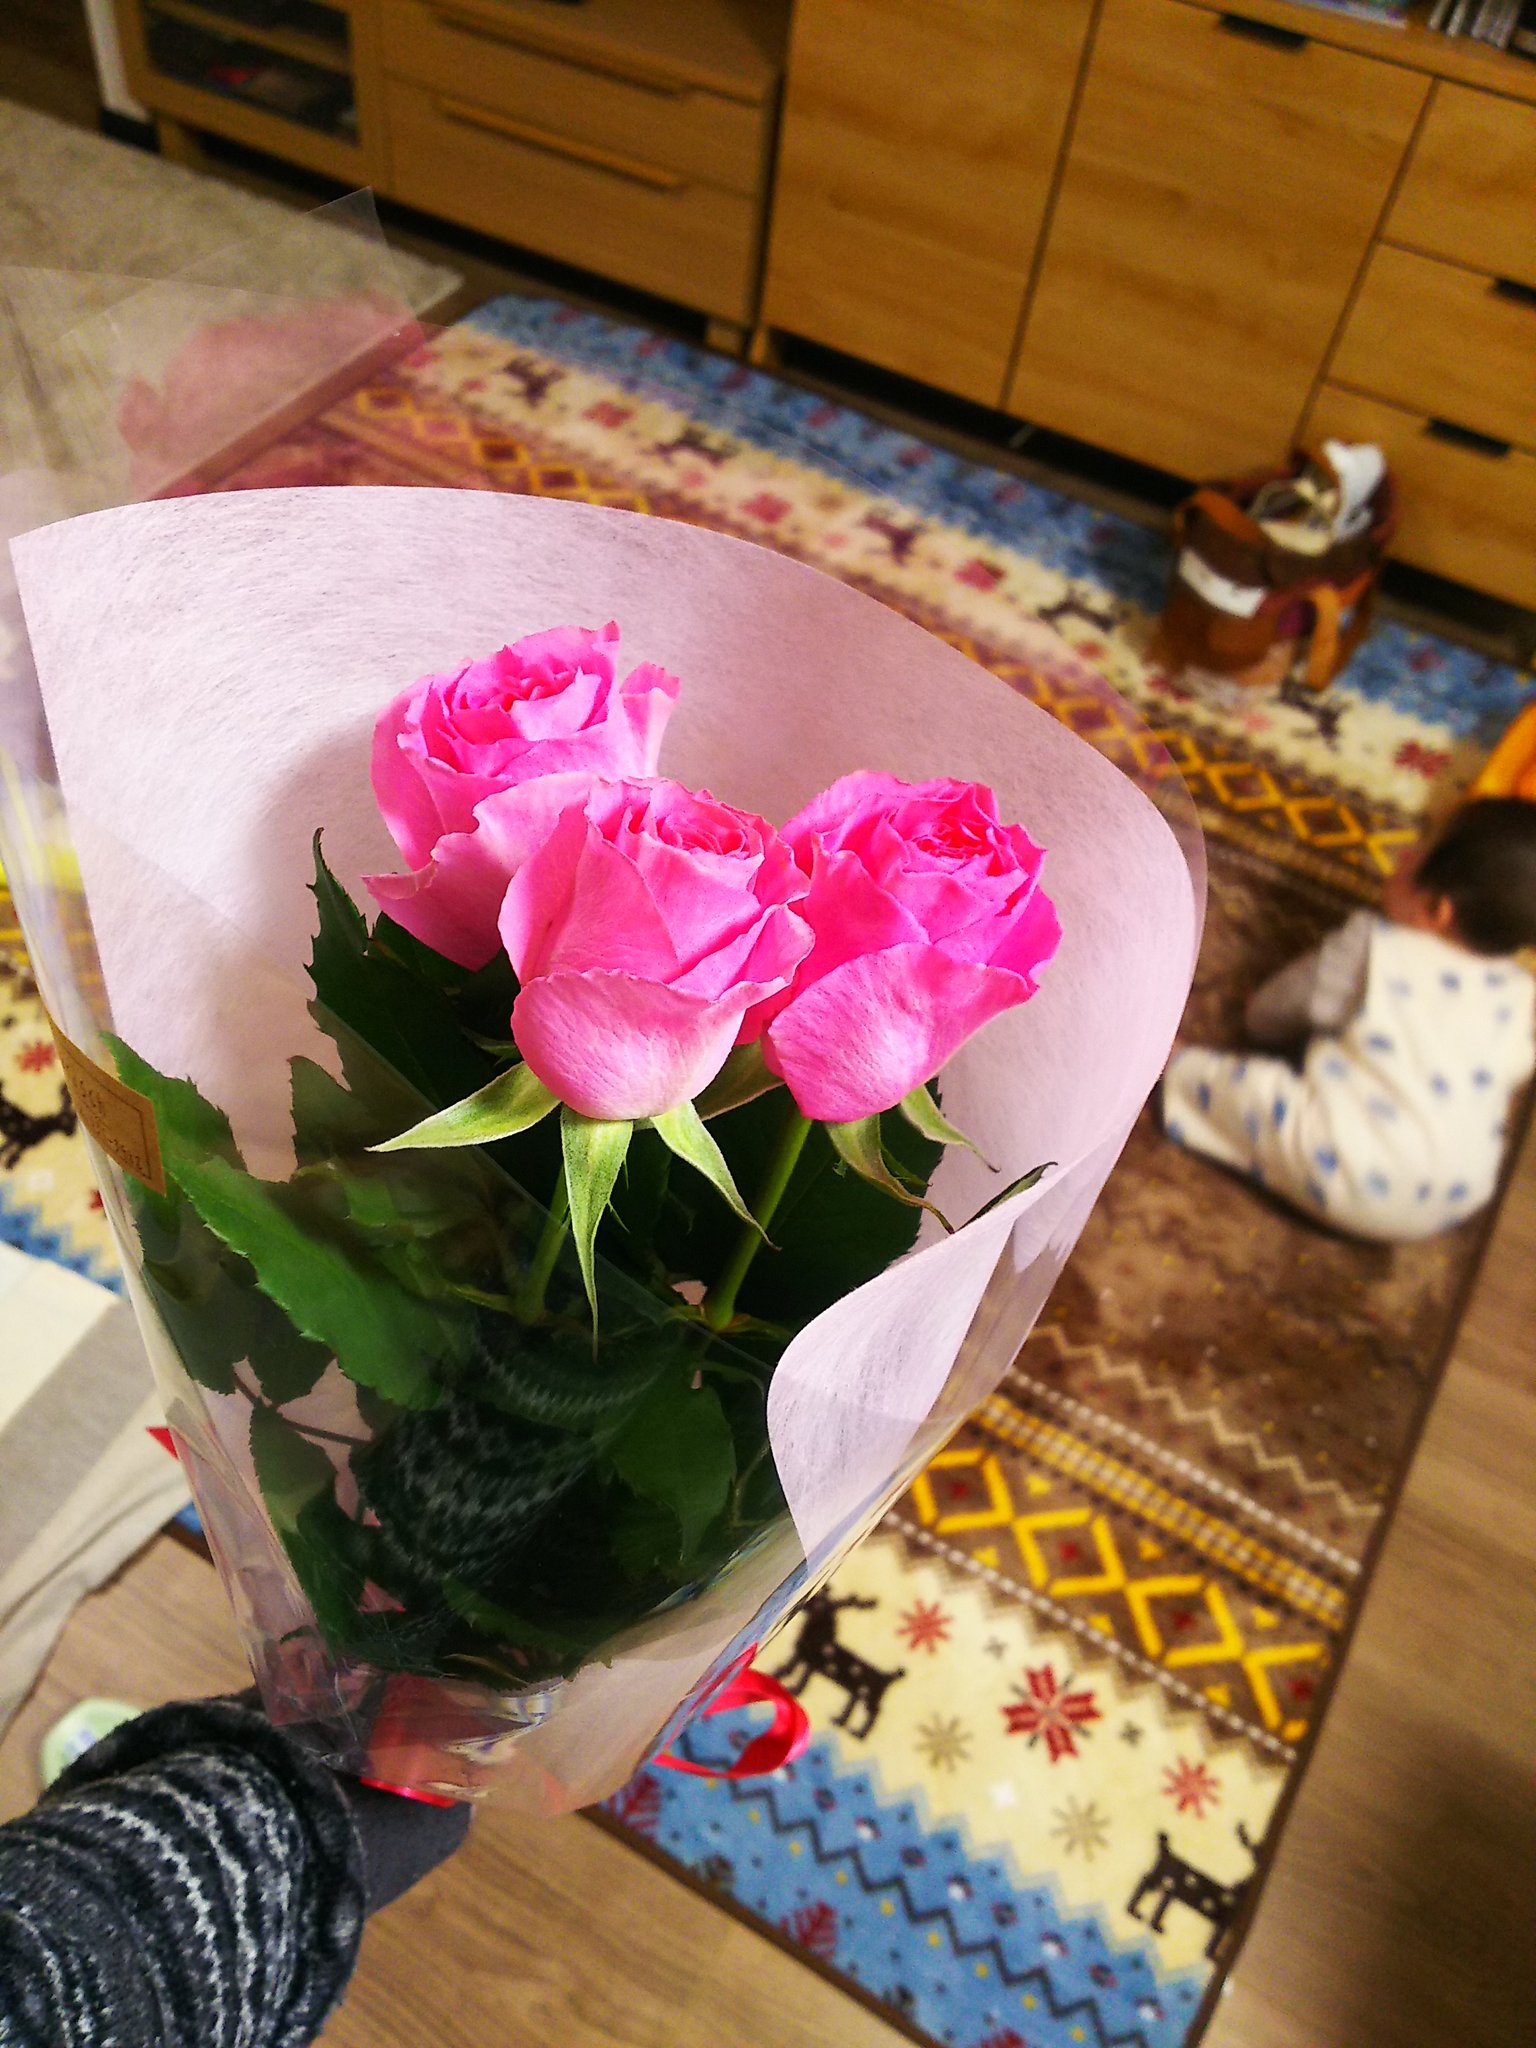 かげやん 奥様の誕生日 柄にもなく 花を買ってみた ピンクの薔薇の花言葉は 感謝 家族3人 笑顔の日々に感謝 という訳で 3本 薔薇 ピンク 花言葉 T Co m1xrnqma Twitter